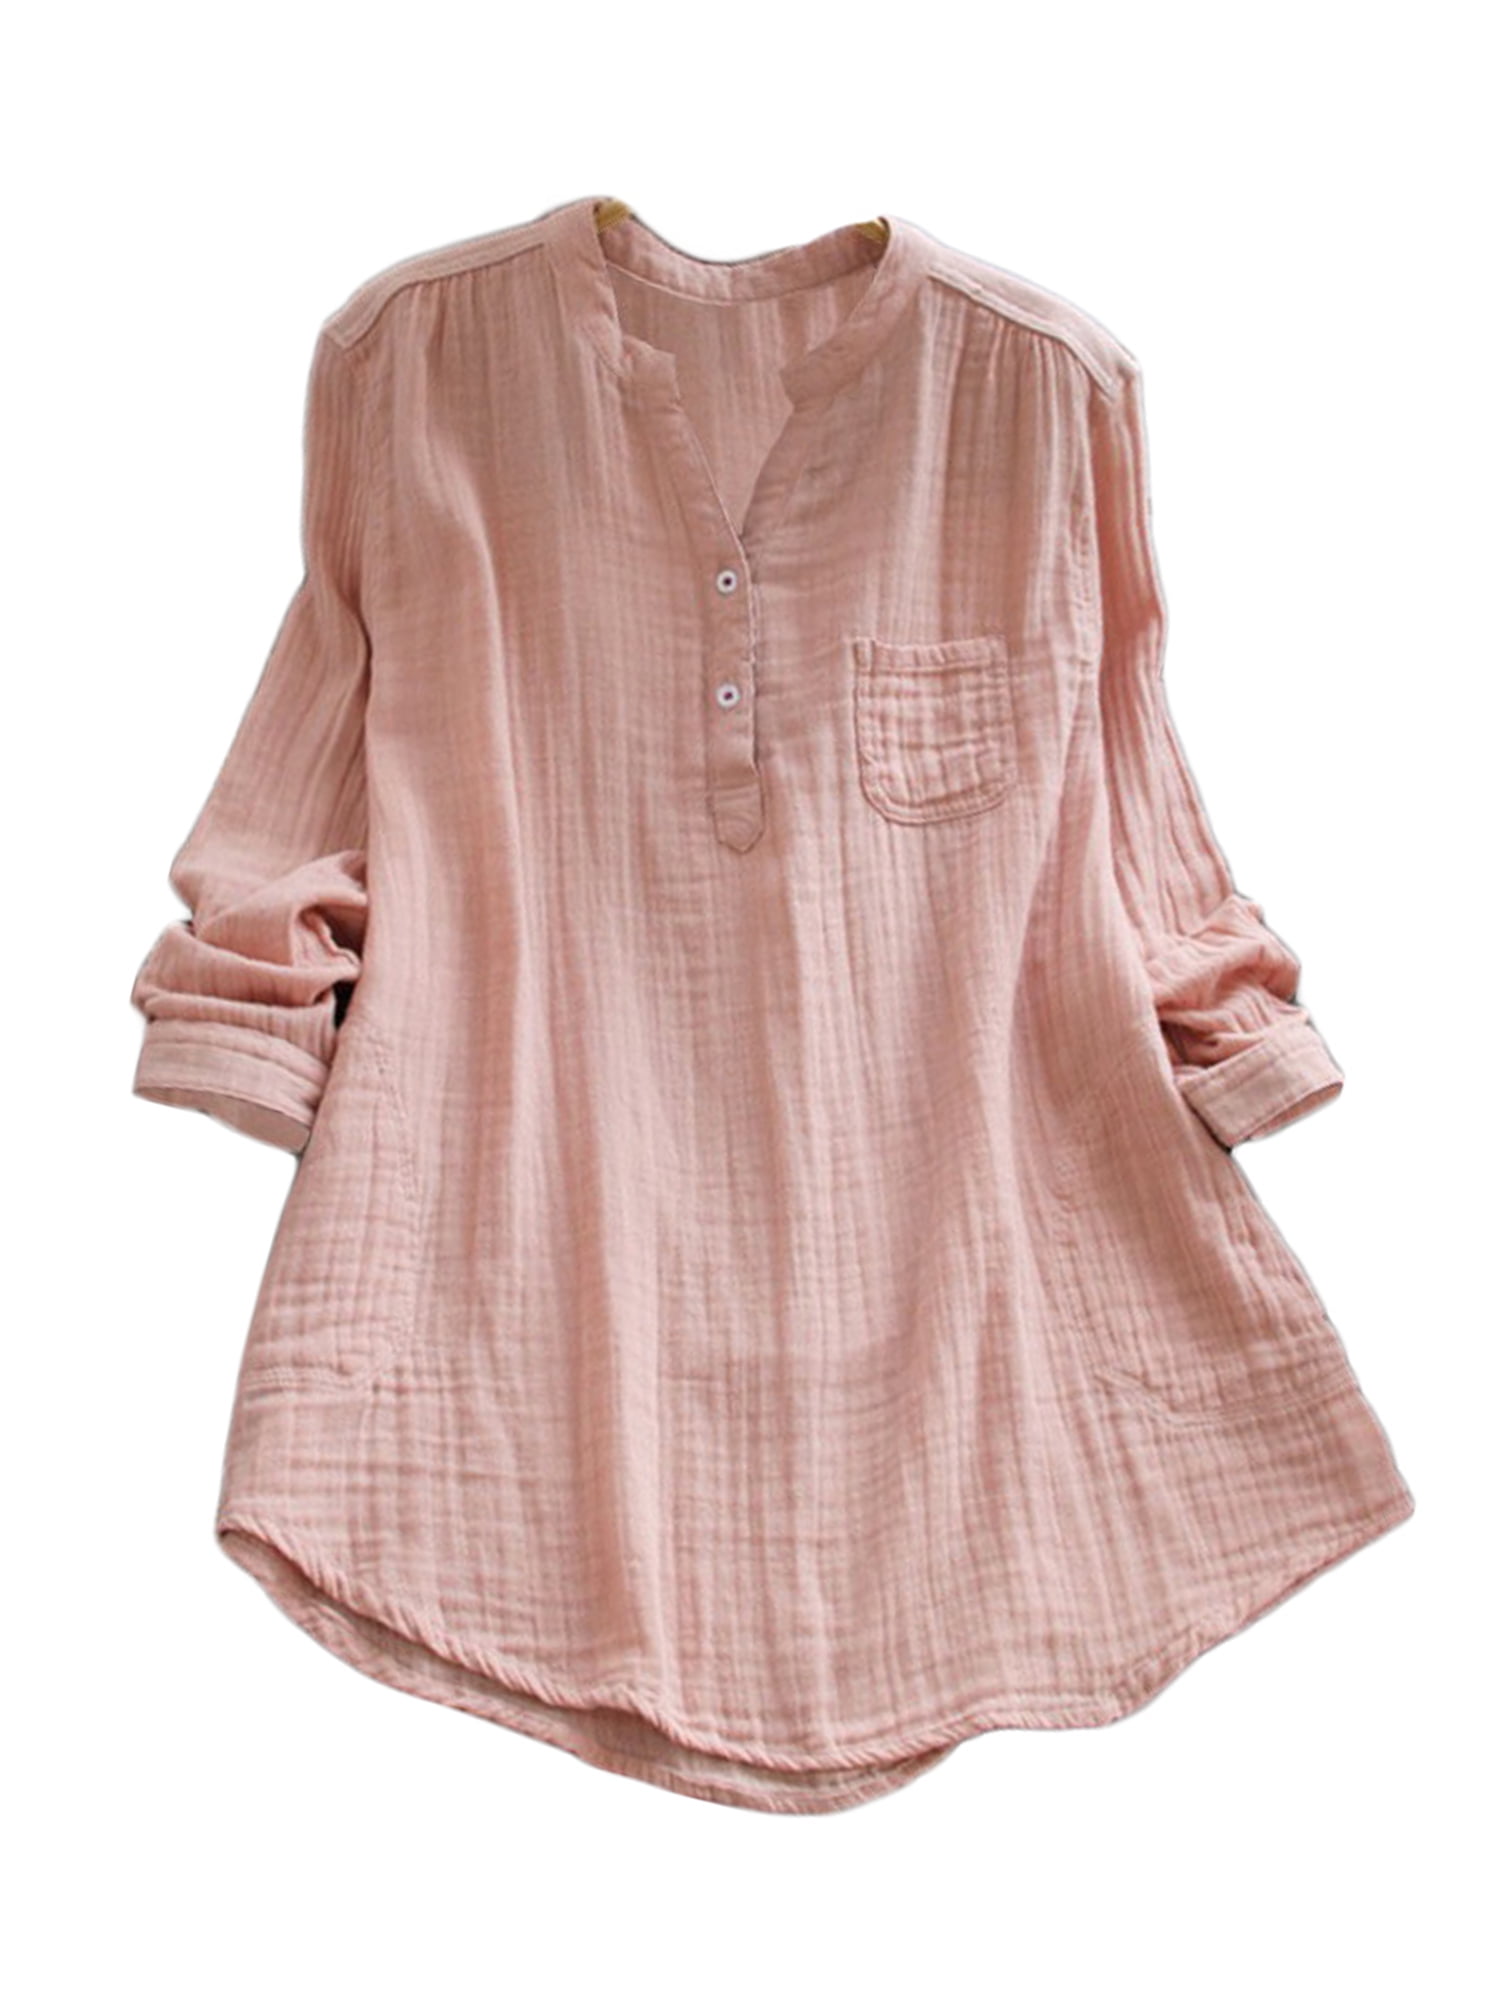 Tunic Tops  Cotton Button Linen Long Sleeve Women Blouse Casual Long Shirt